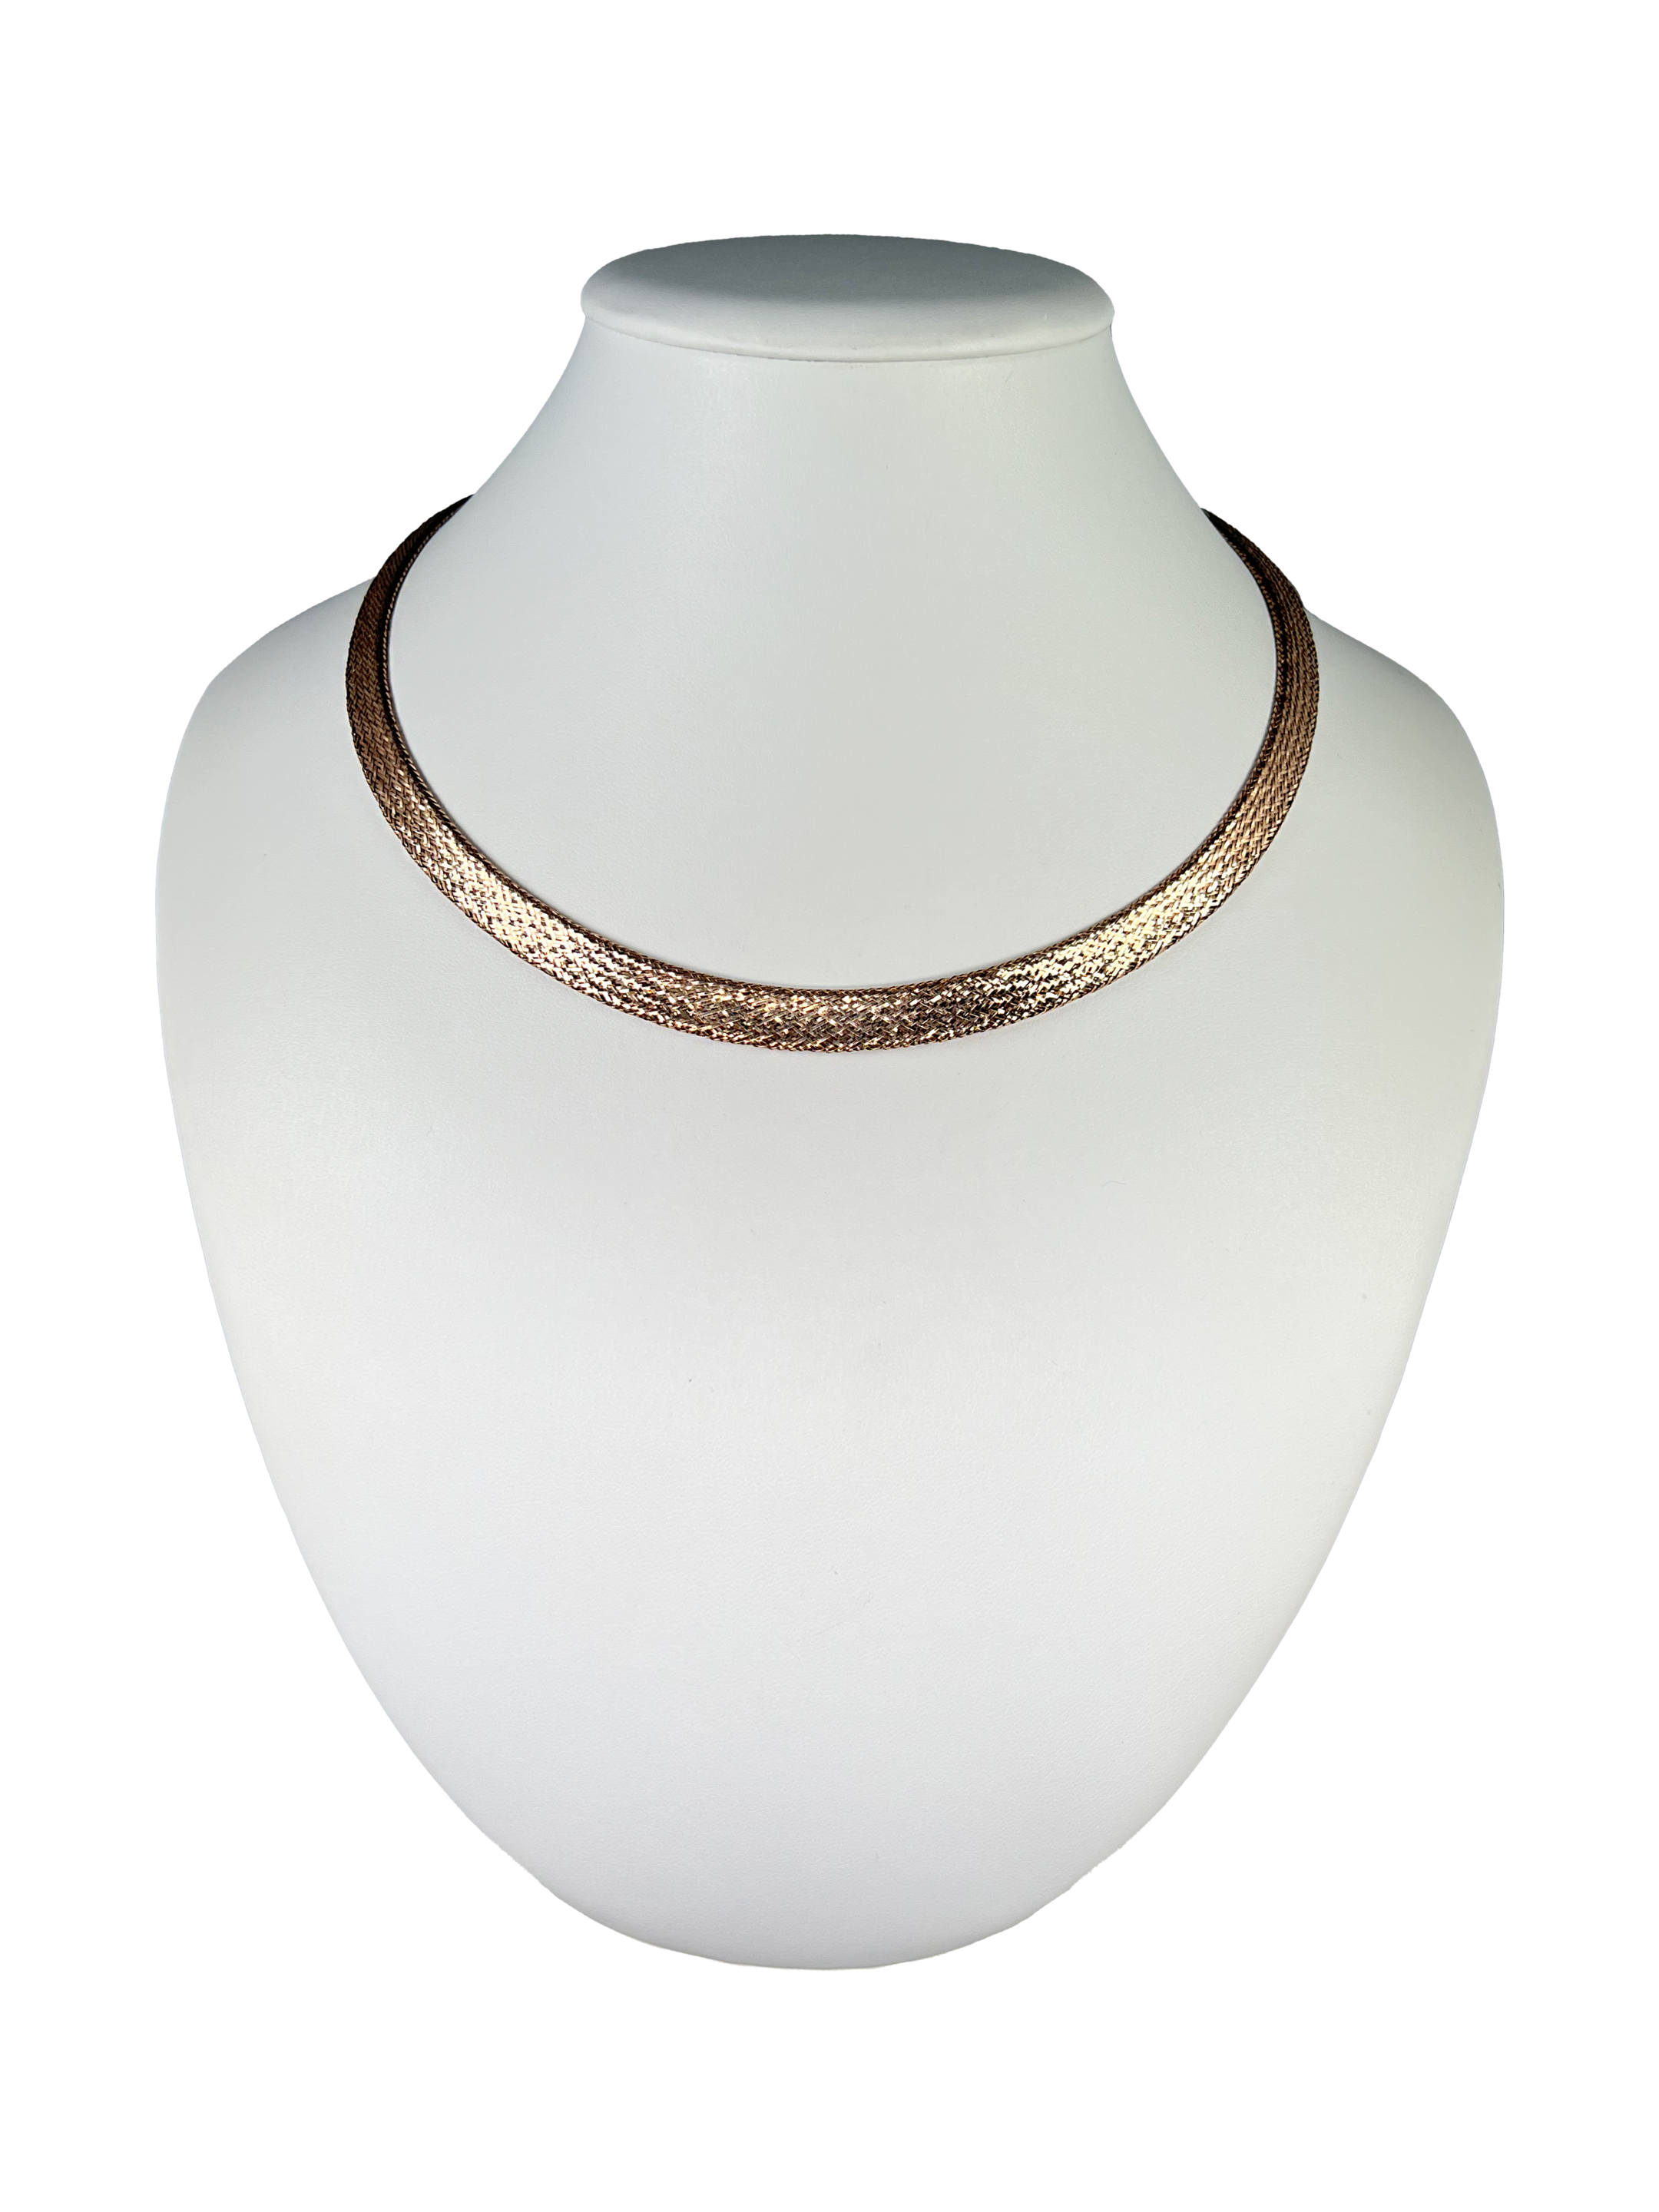 Srebrna ogrlica s pletenim vzorcem